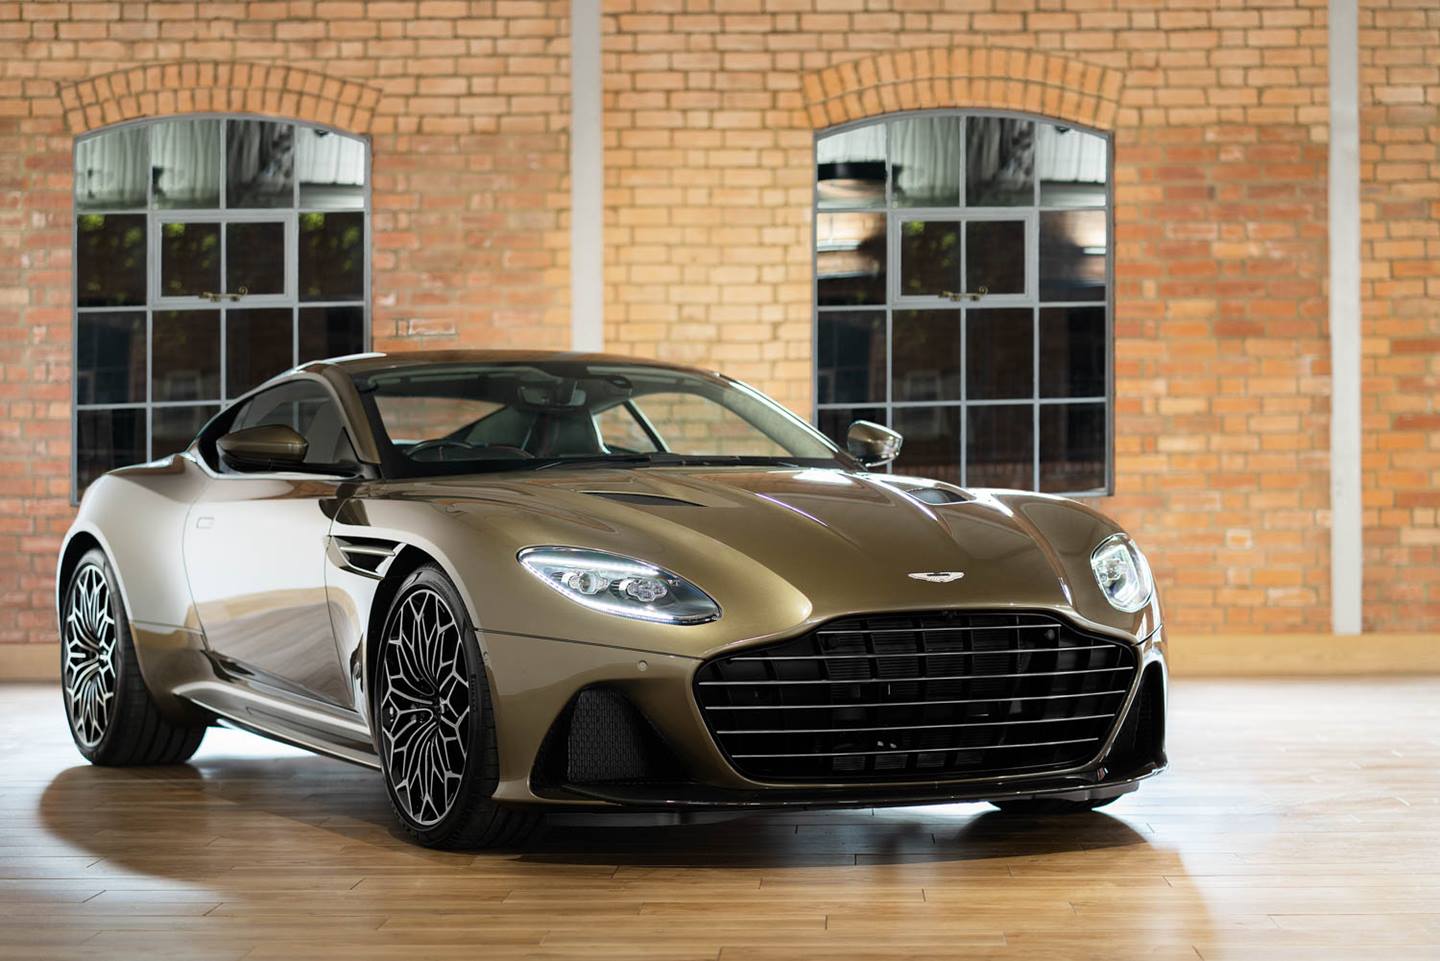 Aston Martin Luncurkan Mobil Klasik James Bond